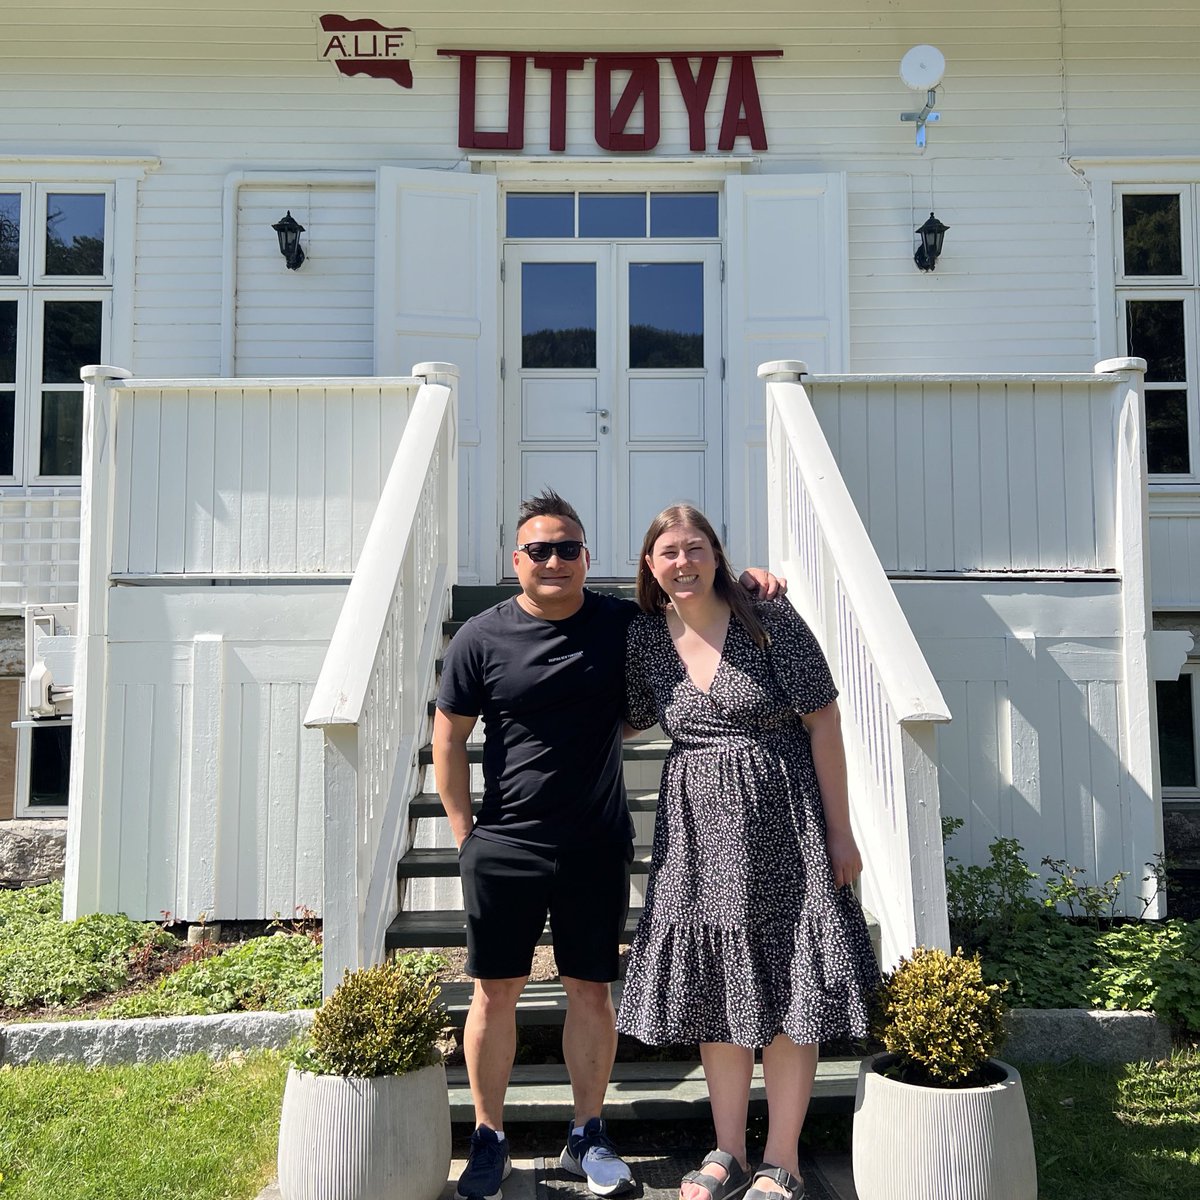 Altid specielt at besøge Utøya 🇳🇴🌹
Tak til min norske ven, AUF-leder @AstridWilla, for rundvisningen på øen. Aldri tie, aldri glemme ❤️ #Utøya @aufnorge